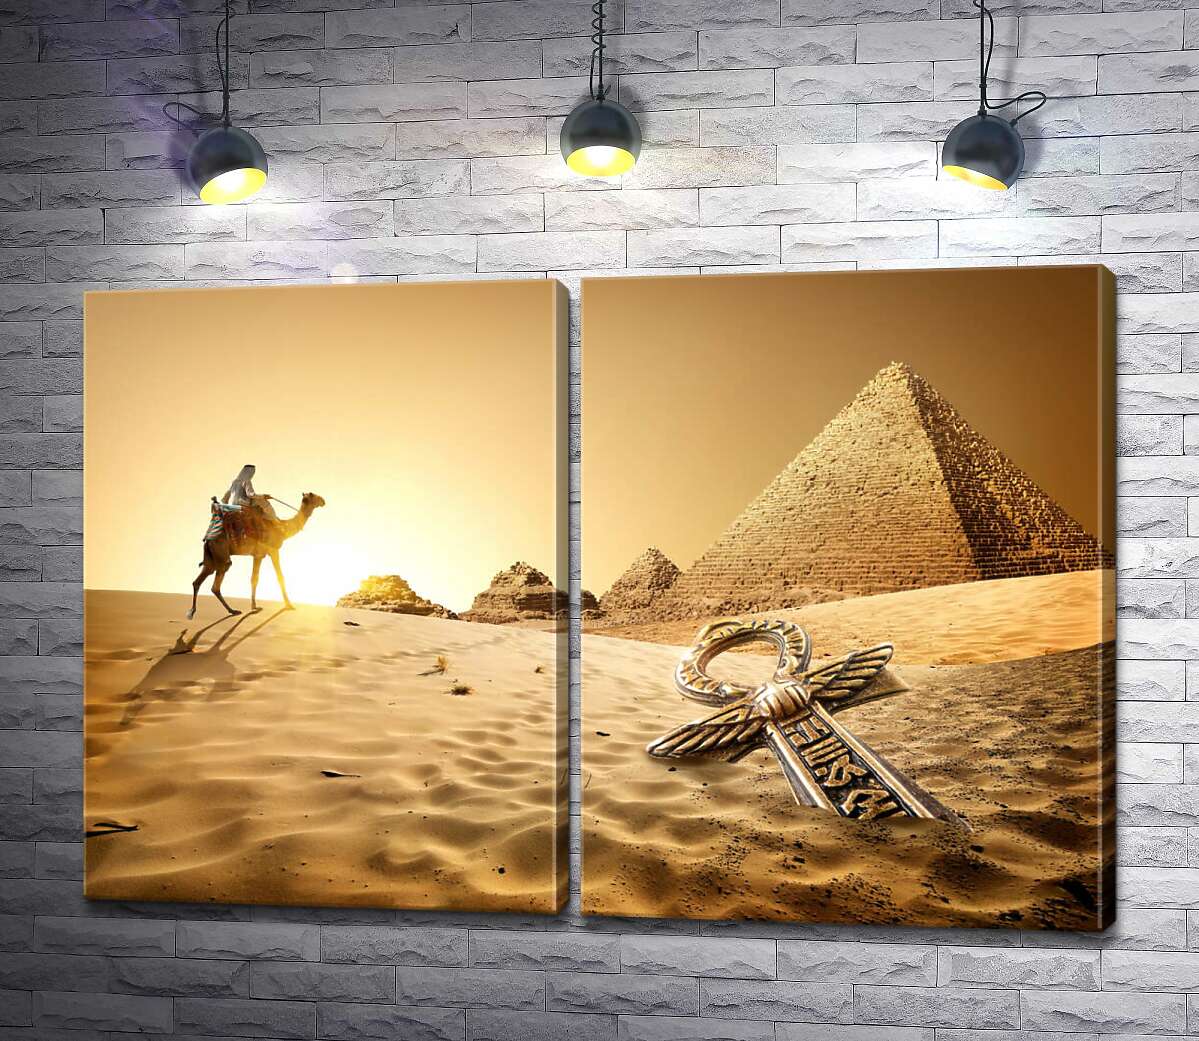 модульна картина Символ життя - анх в пісках пустелі на фоні єгипетських пірамід